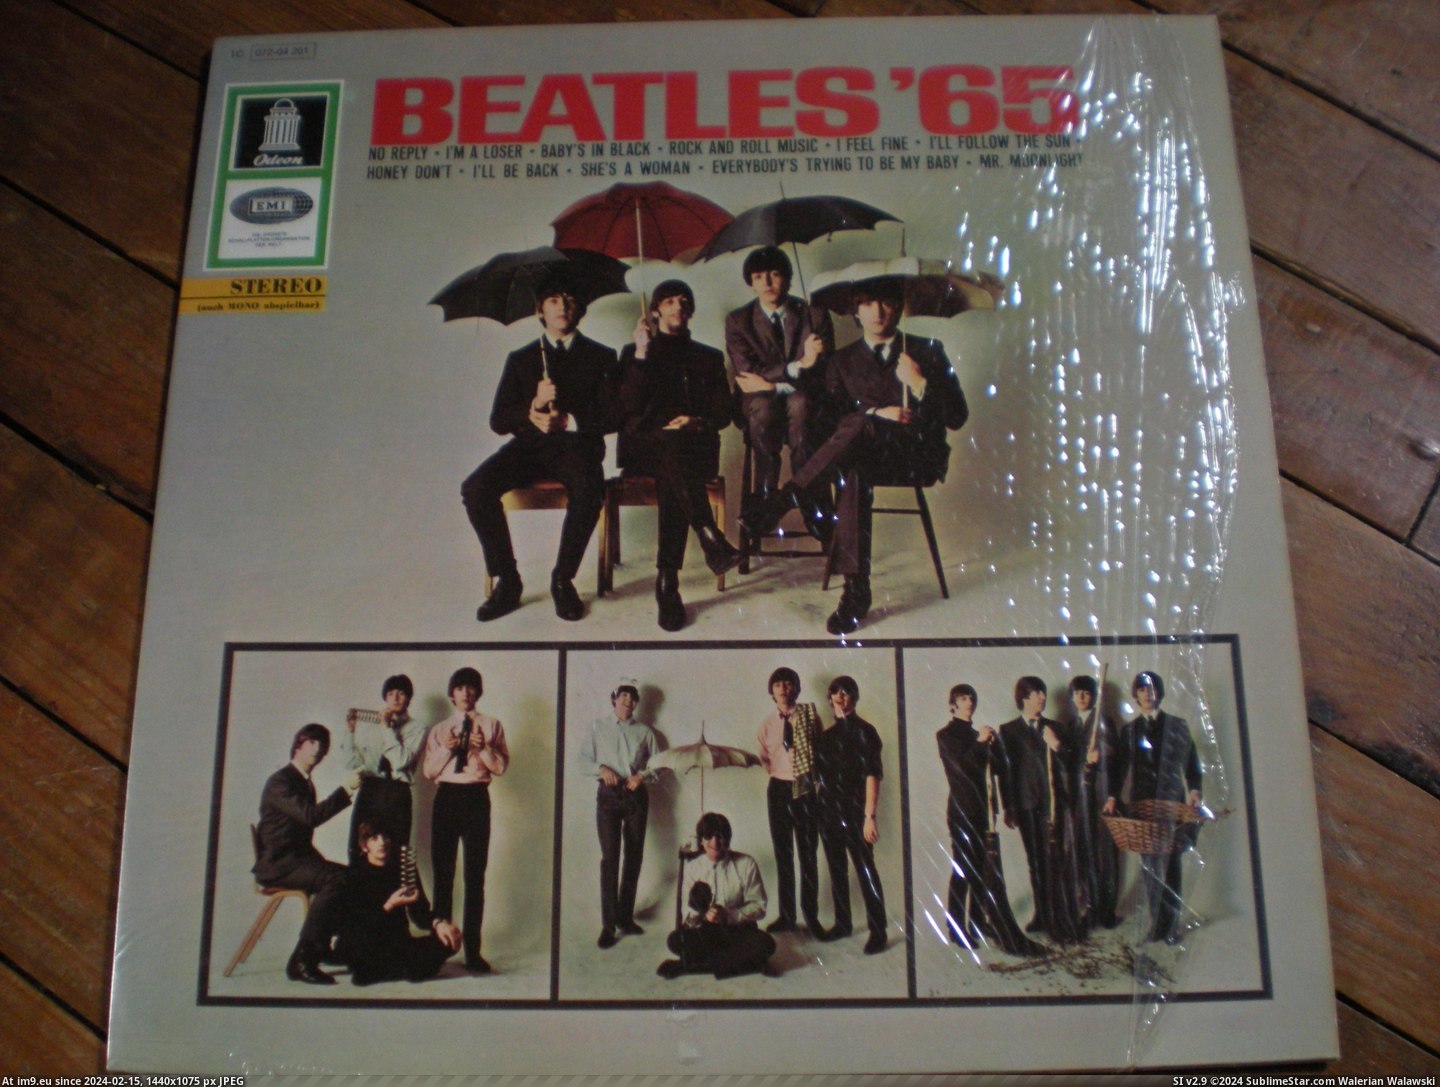  #Beatles  Beatles 65 5 Pic. (Bild von album new 1))